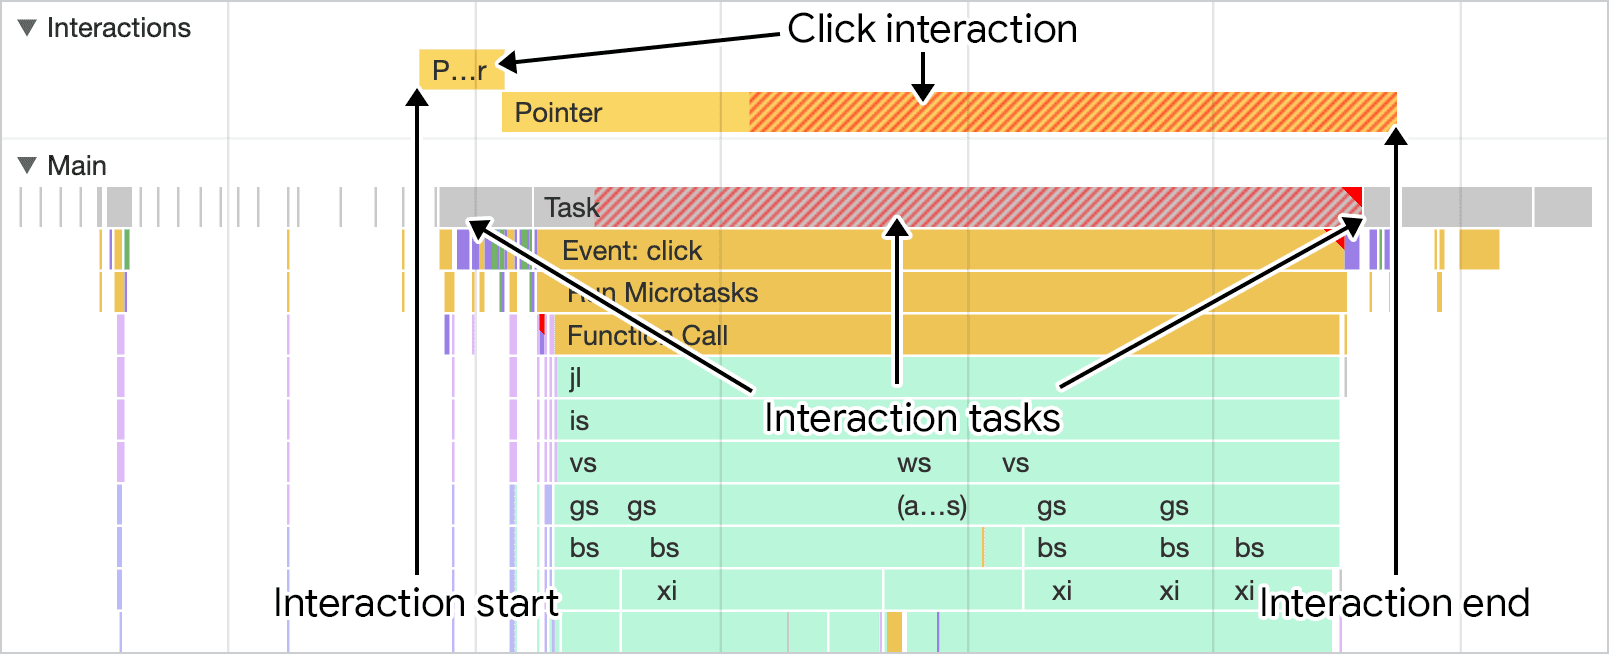 Chrome DevTools의 성능 패널에 시각화된 상호작용 스크린샷 기본 스레드 트랙 위에 있는 상호작용 트랙에는 상호작용의 지속 시간이 표시되며, 이는 기본 스레드 활동과 함께 표시될 수 있습니다.